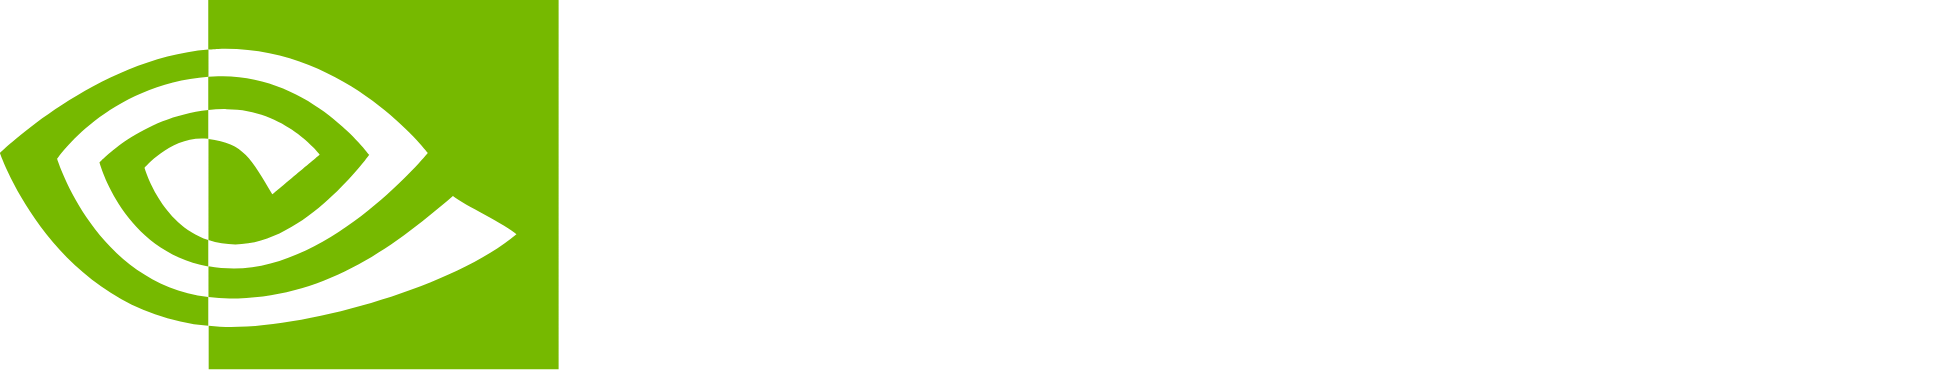 NVIDIA logo large for dark backgrounds (transparent PNG)